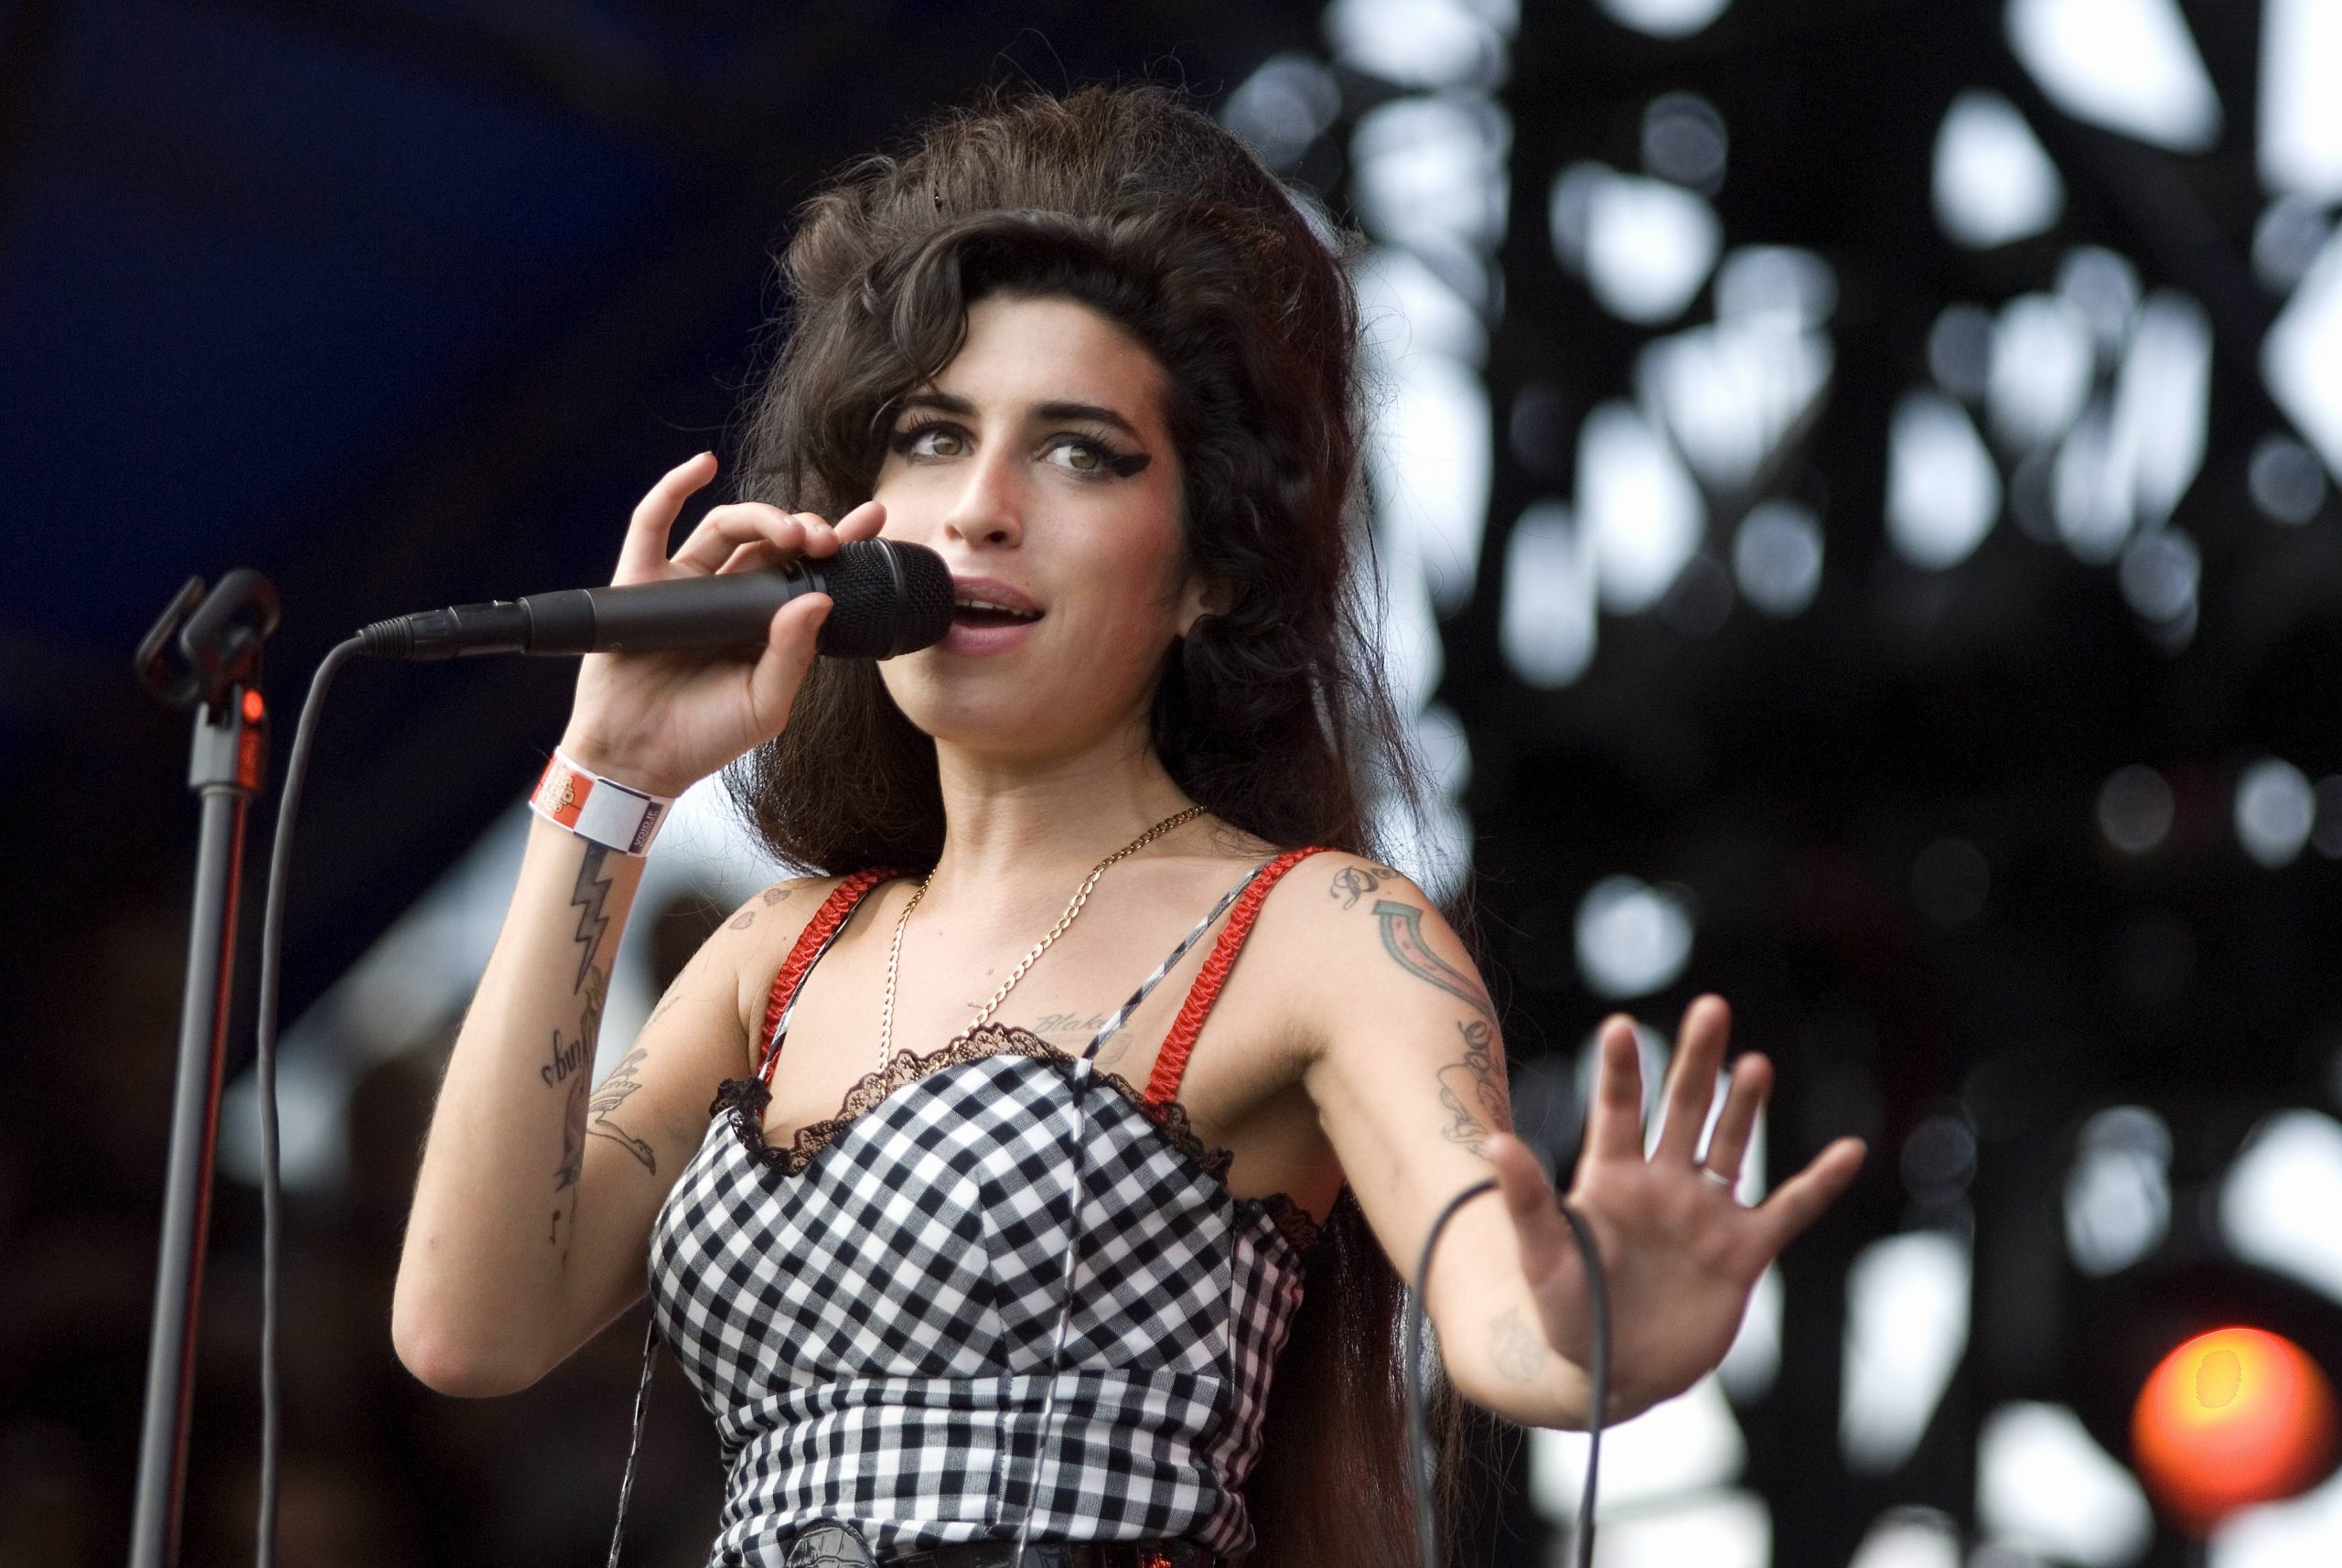 La persona detrás de la cantante: Amy Winehouse tendrá un nuevo documental en Paramount+